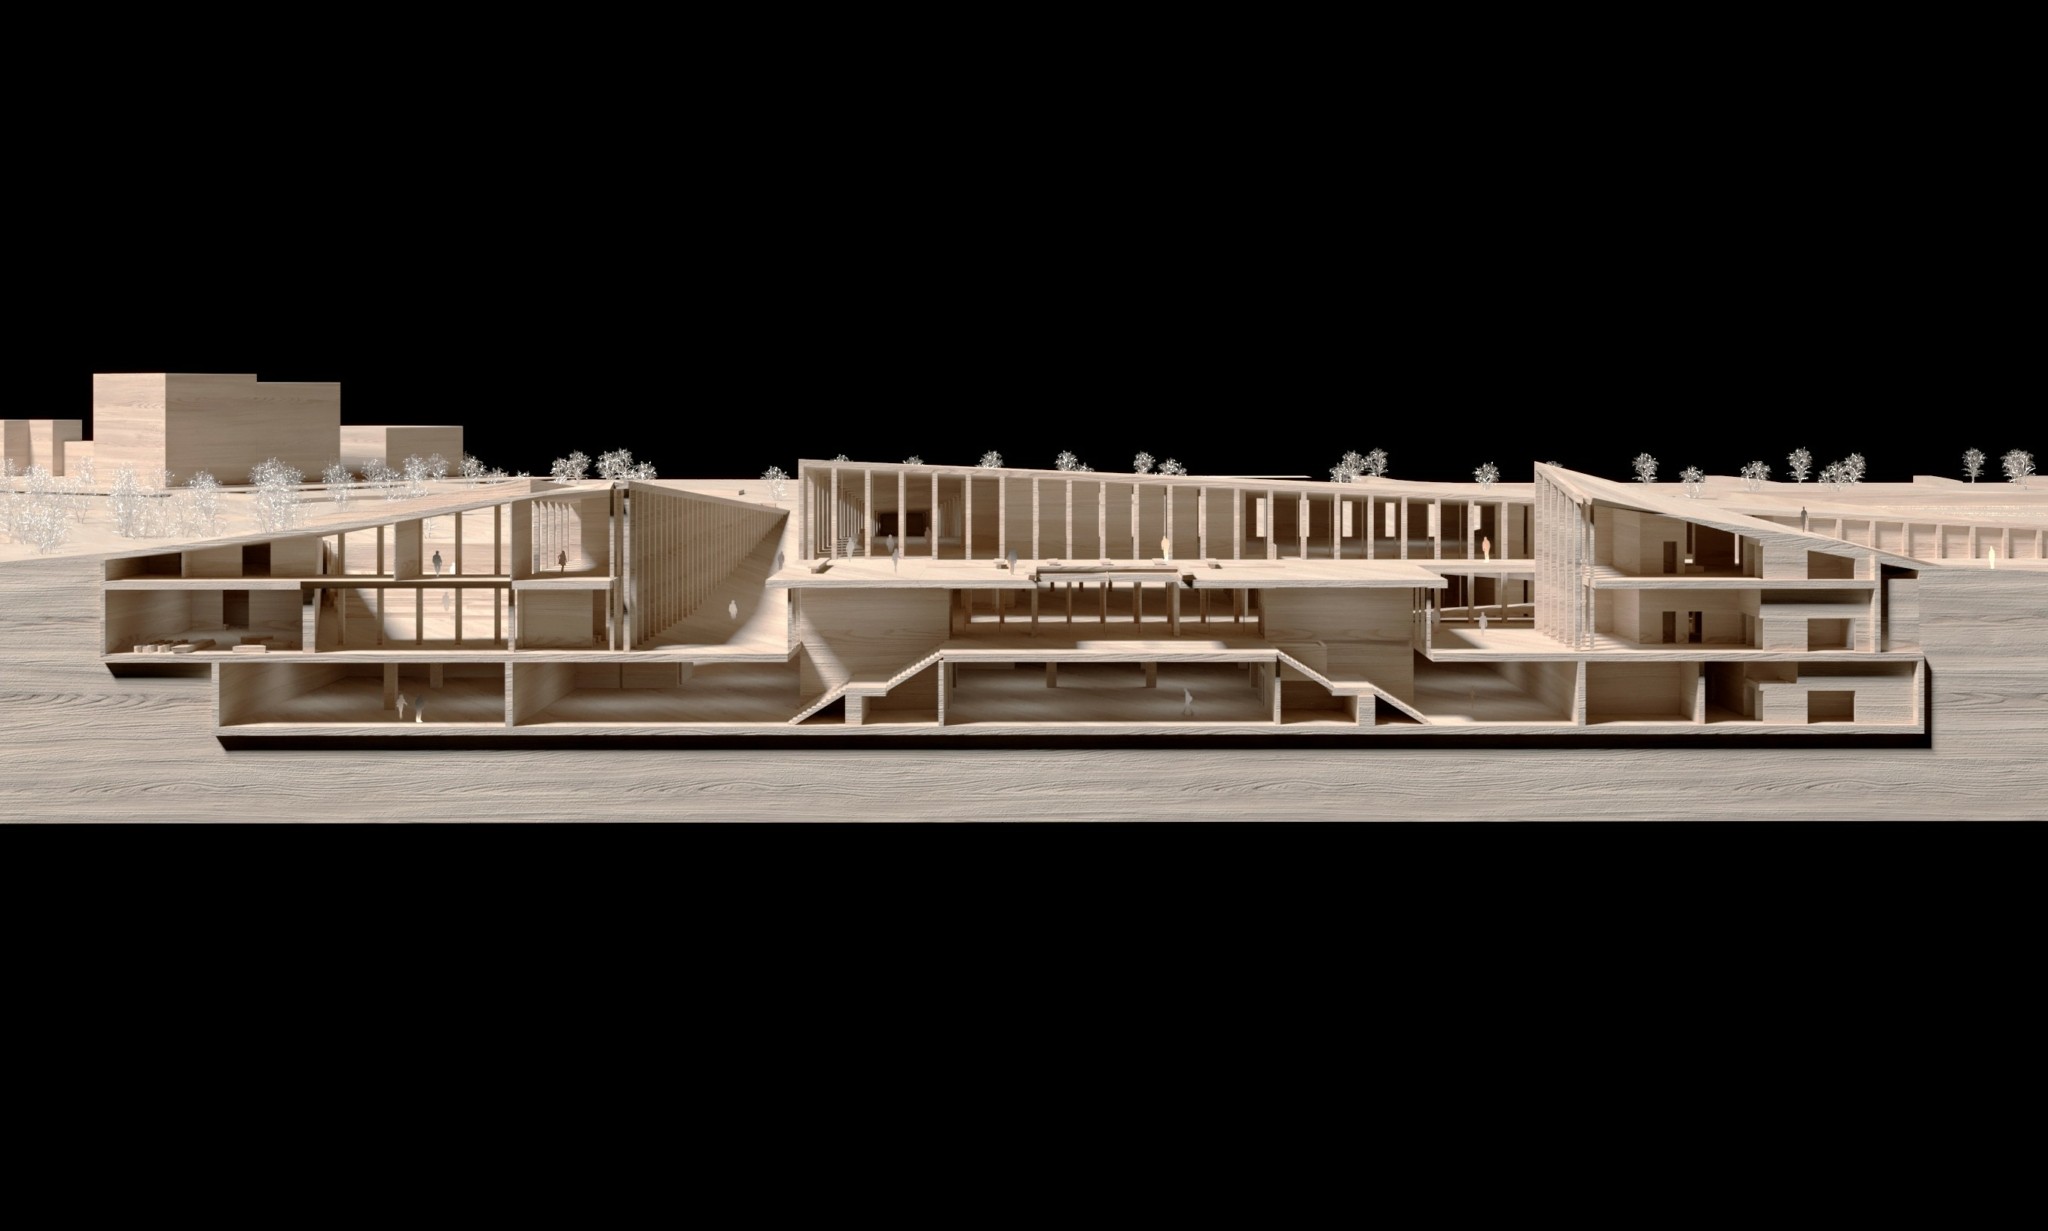 Ετσι θα είναι το νέο Aρχαιολογικό Mουσείο Αθηνών που θα αλλάξει για πάντα την Ακαδημία Πλάτωνος